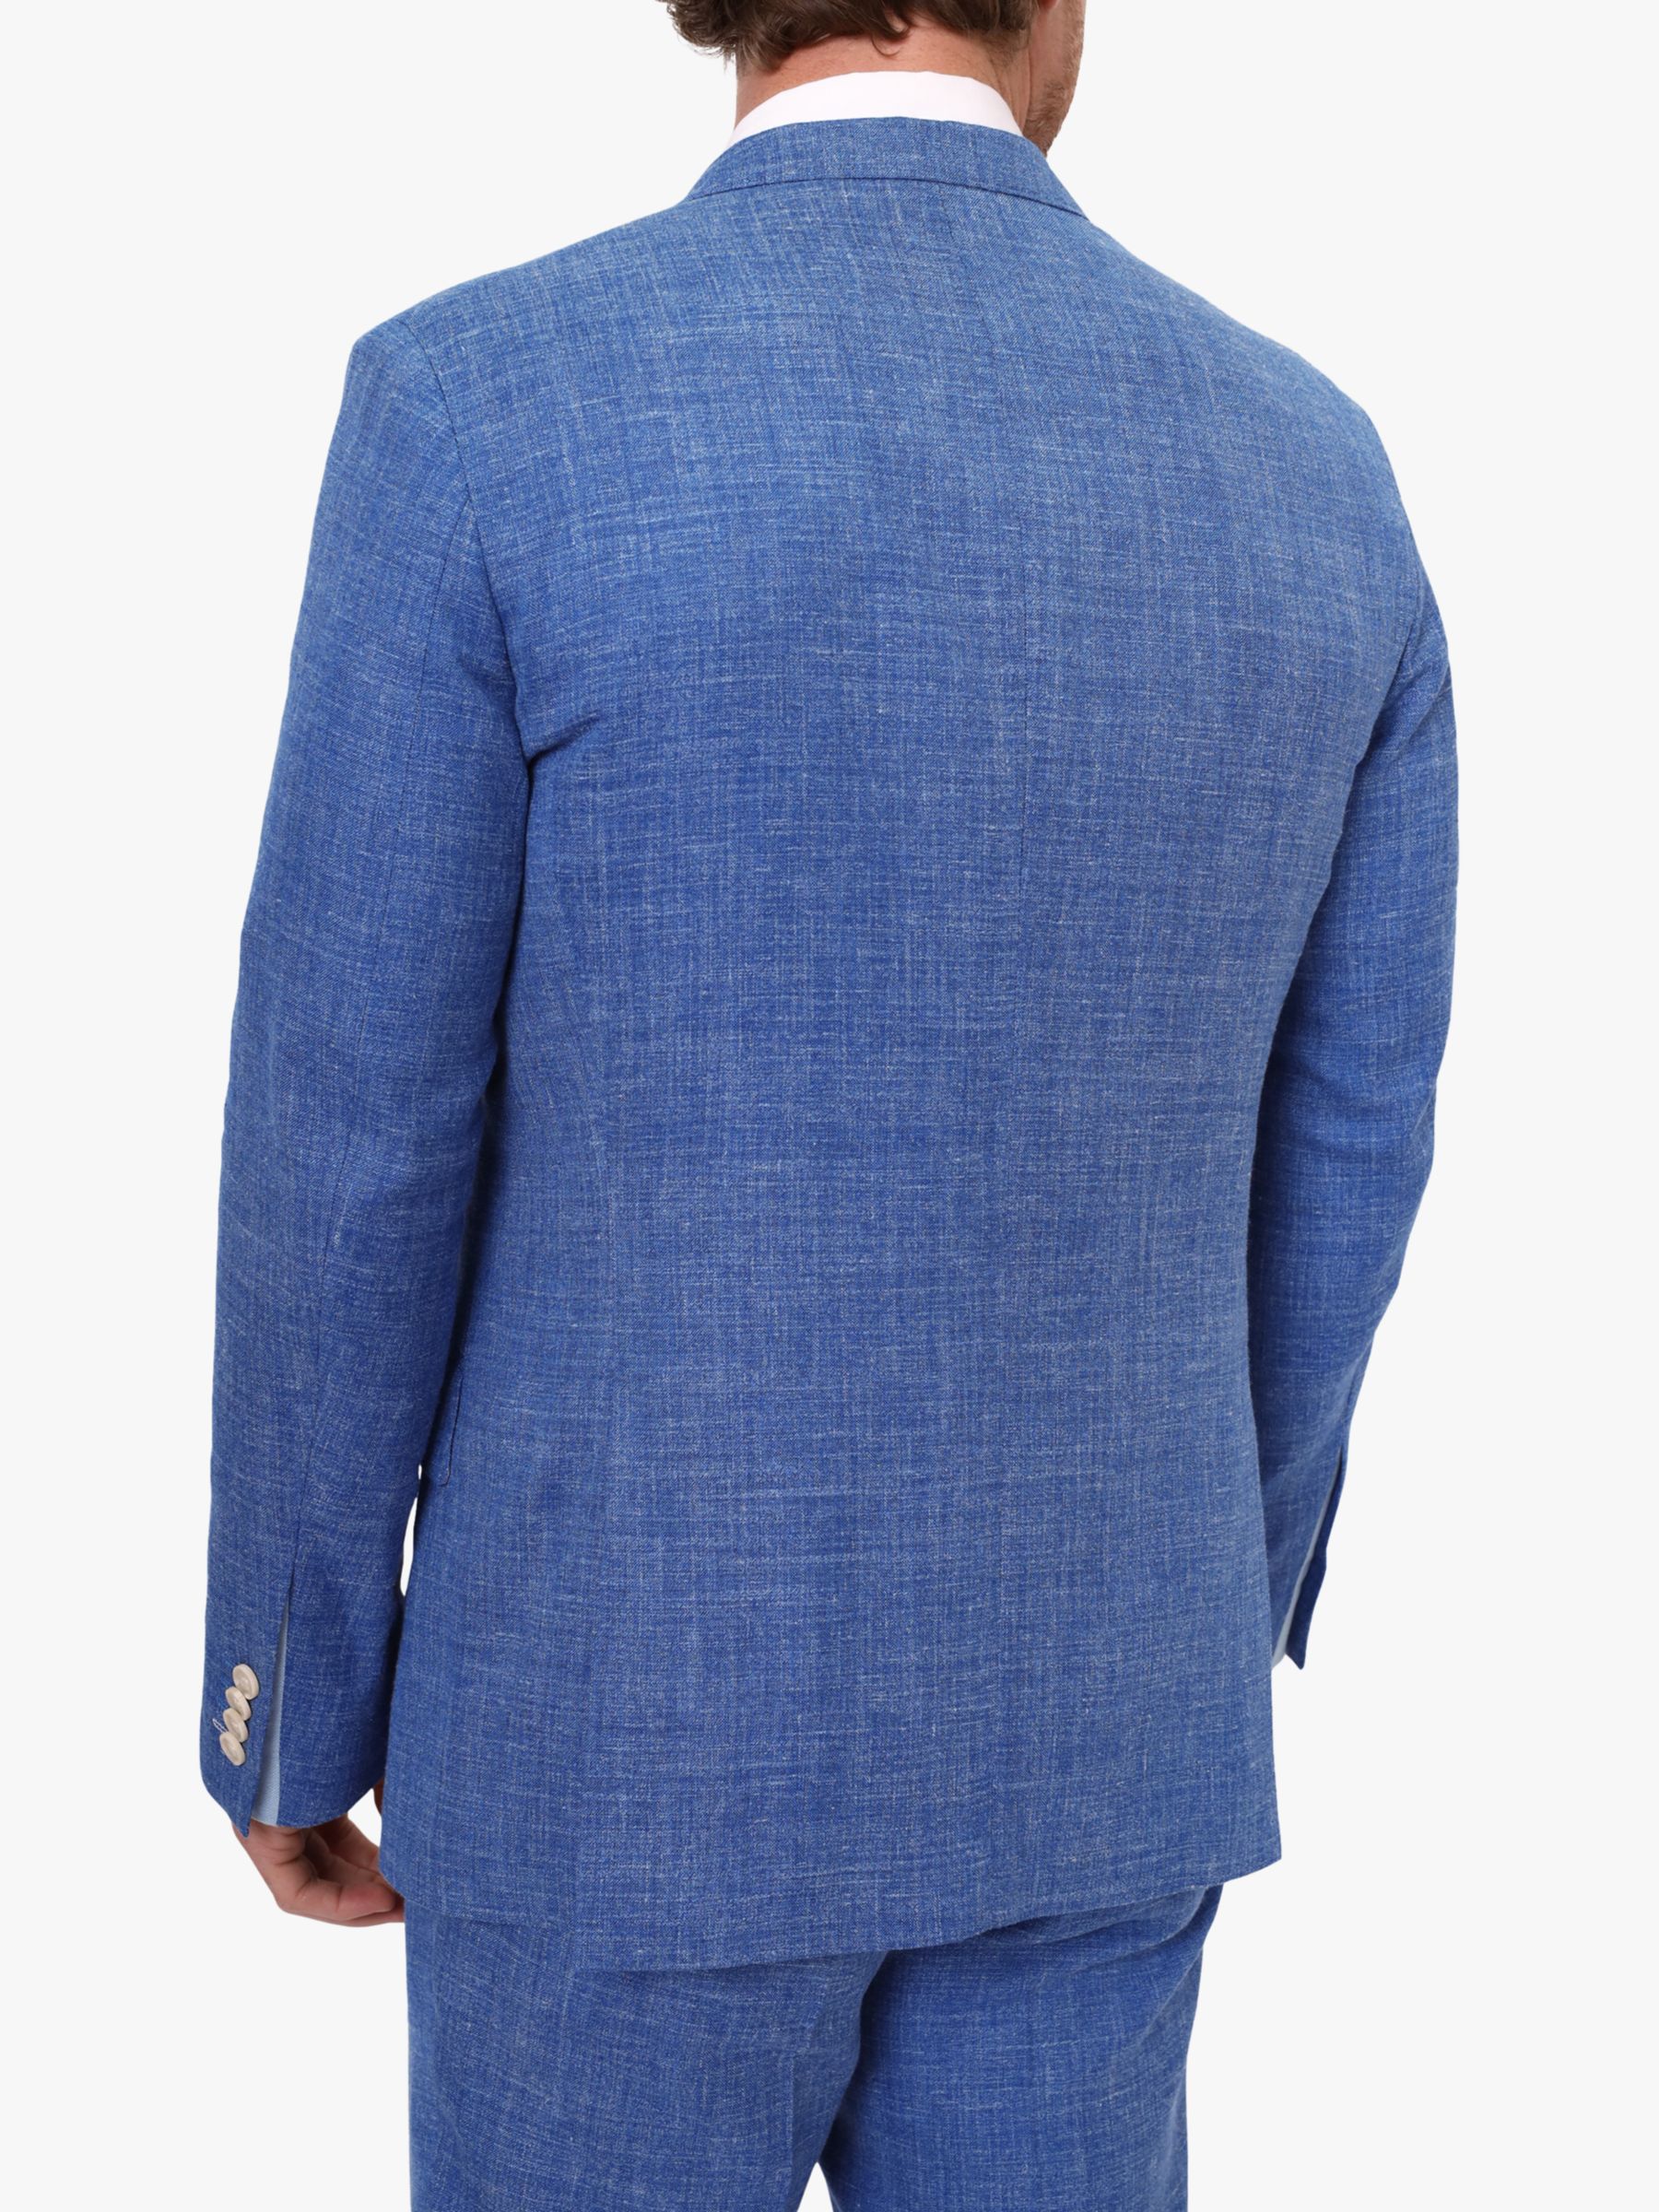 KOY Linen Blend Suit Jacket, Mid Blue, 48R